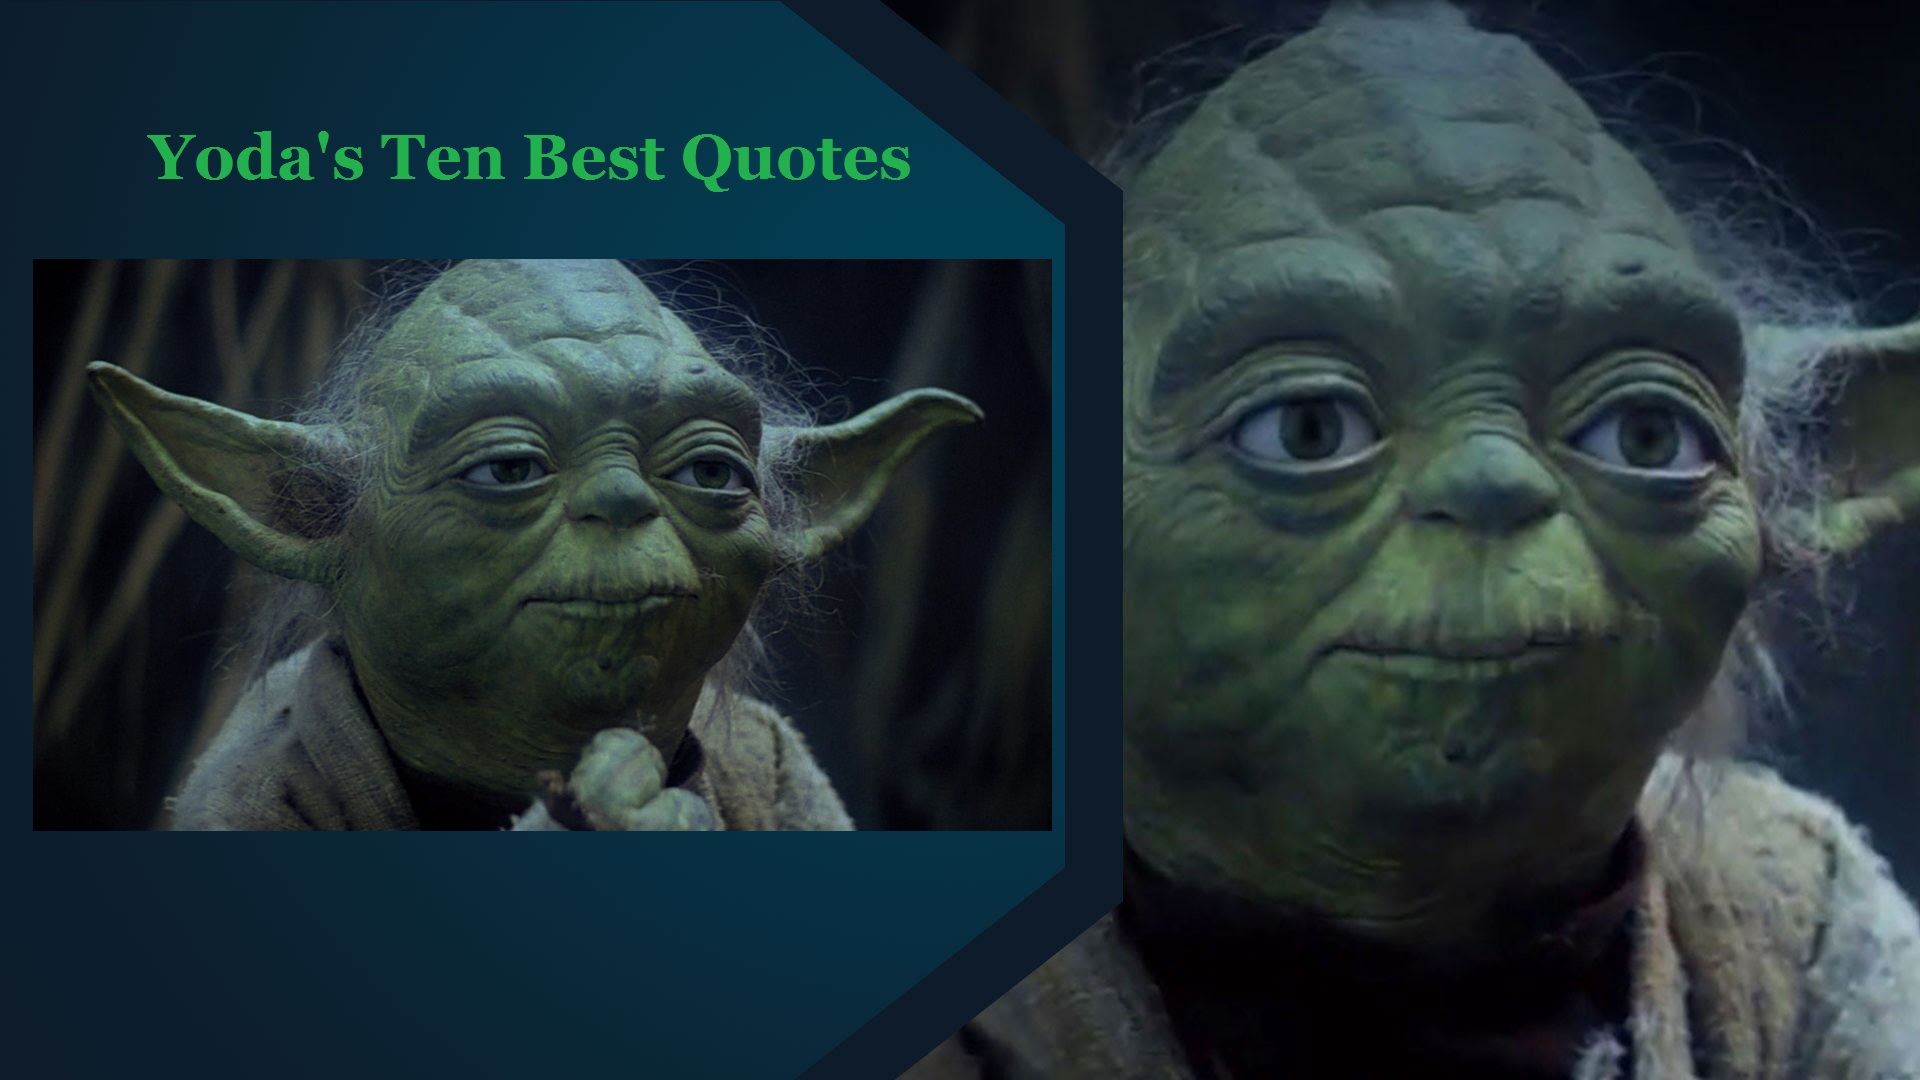 Yoda's Ten Best Quotes